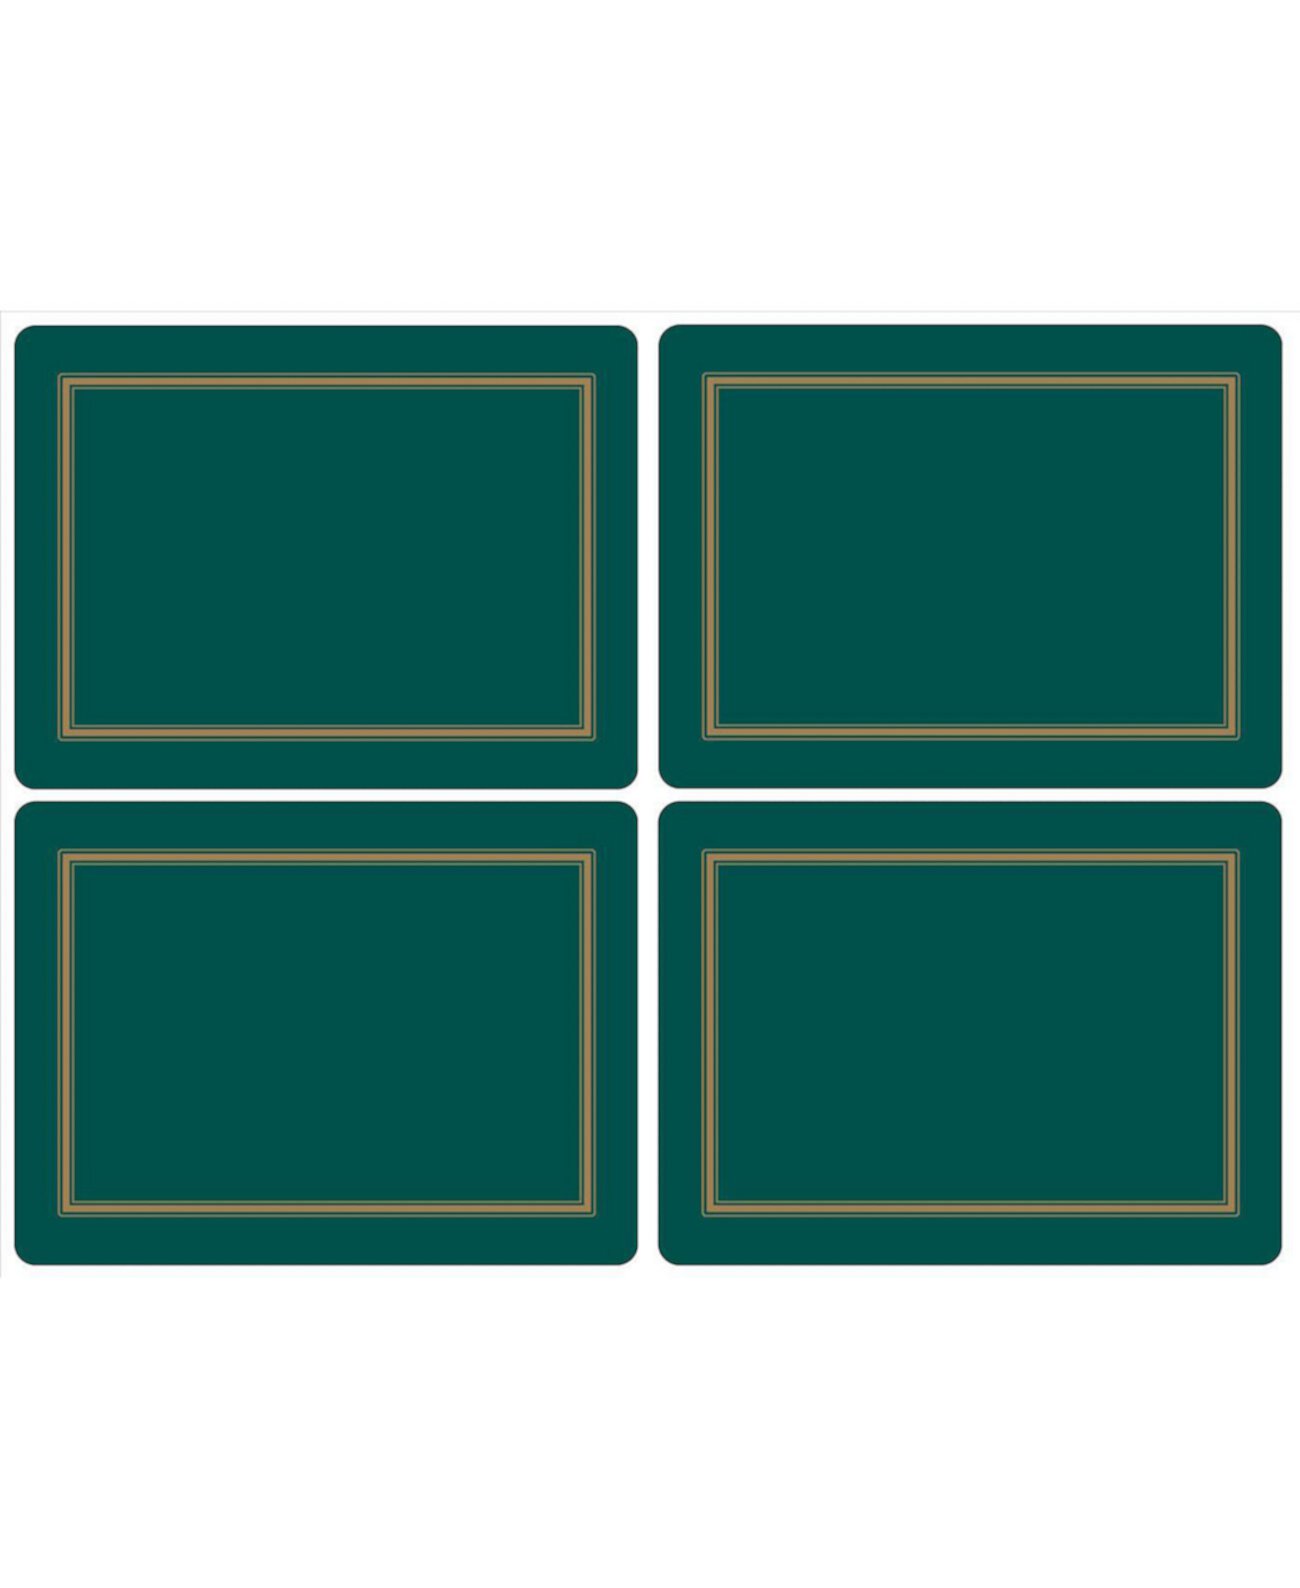 Классические салфетки Emerald Placemats, набор из 4 шт. Pimpernel